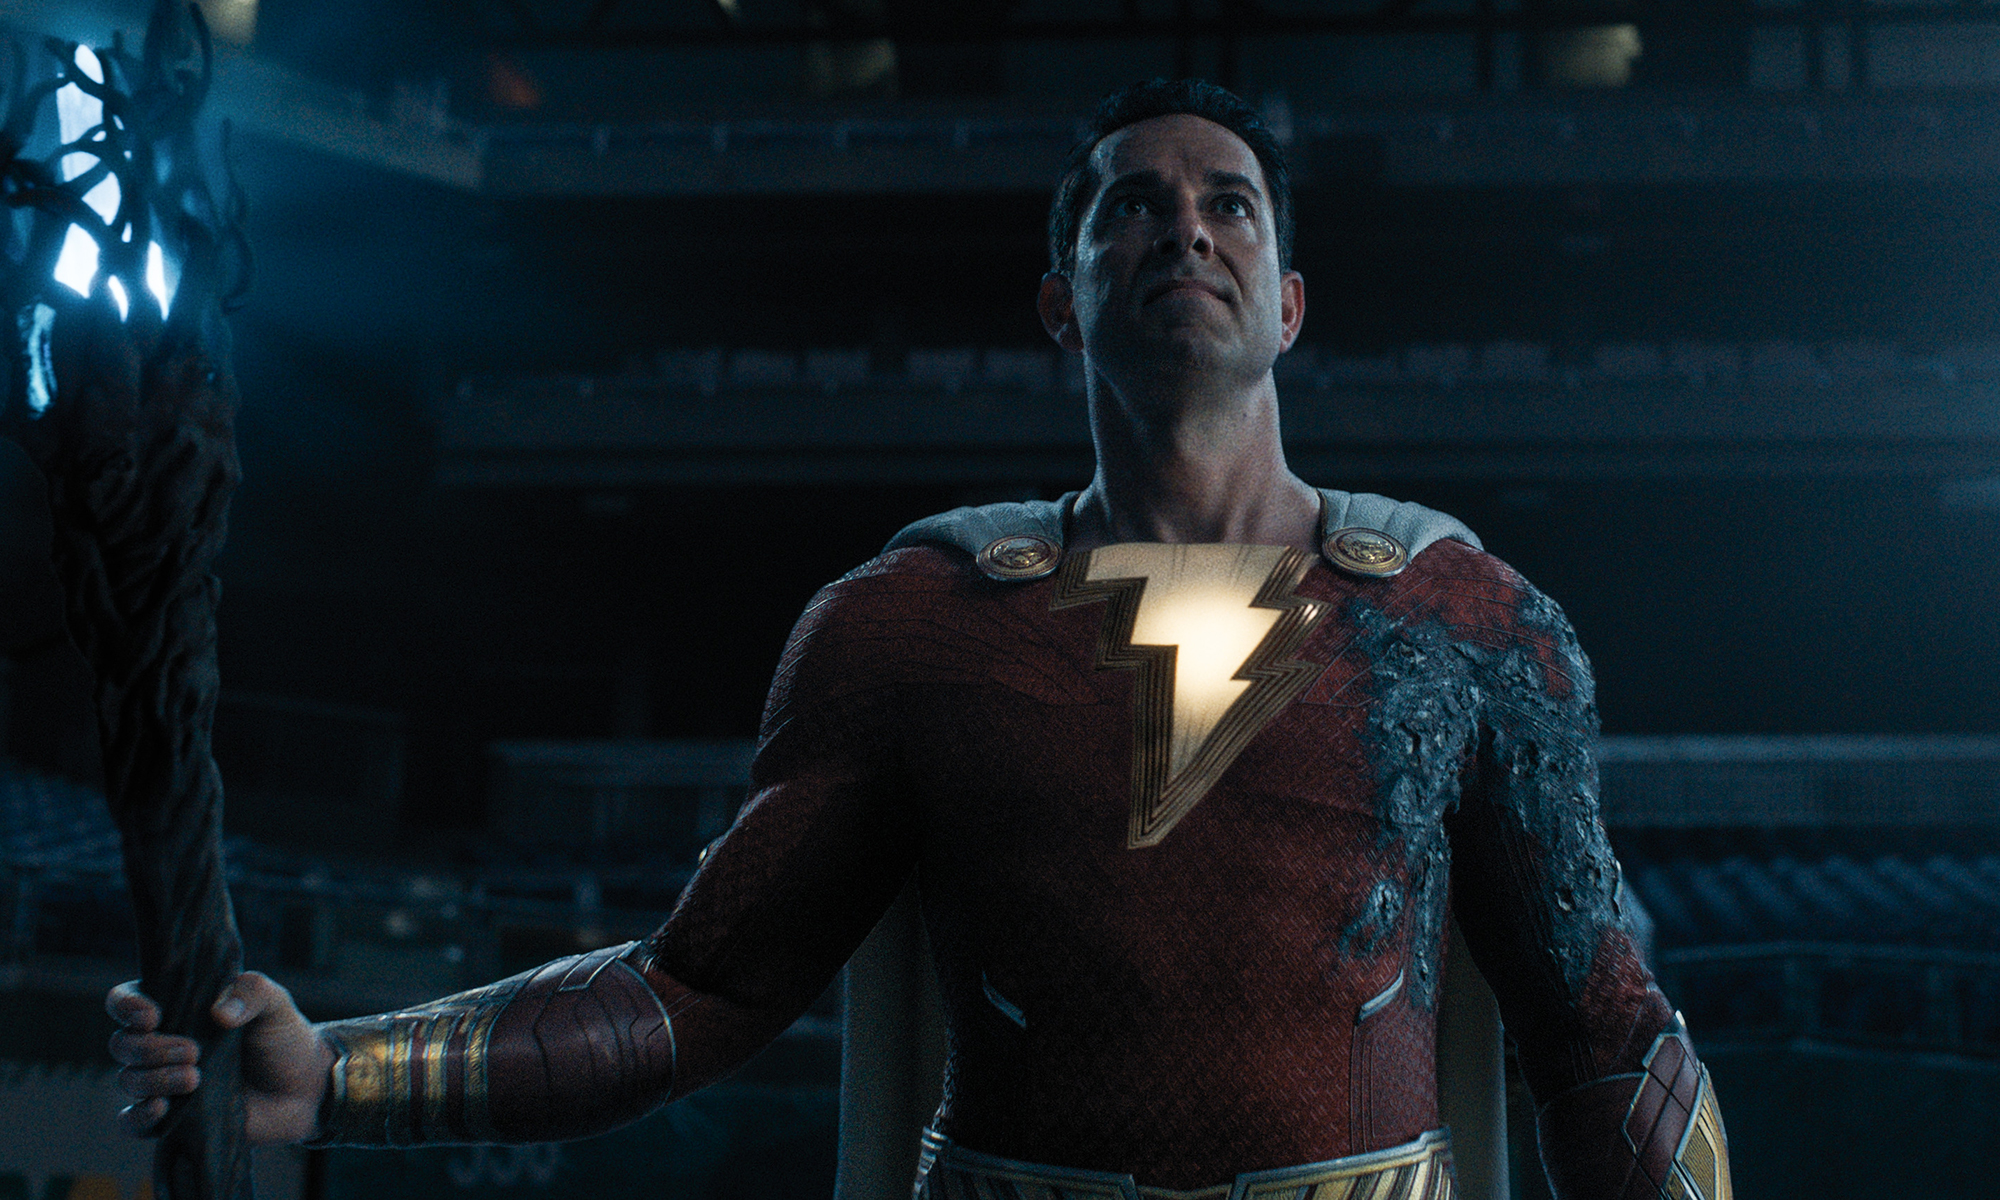 ¡Shazam! El director de 'Furia de Dioses' dice que "ha terminado con las películas de superhéroes" tras las malas críticas recibidas